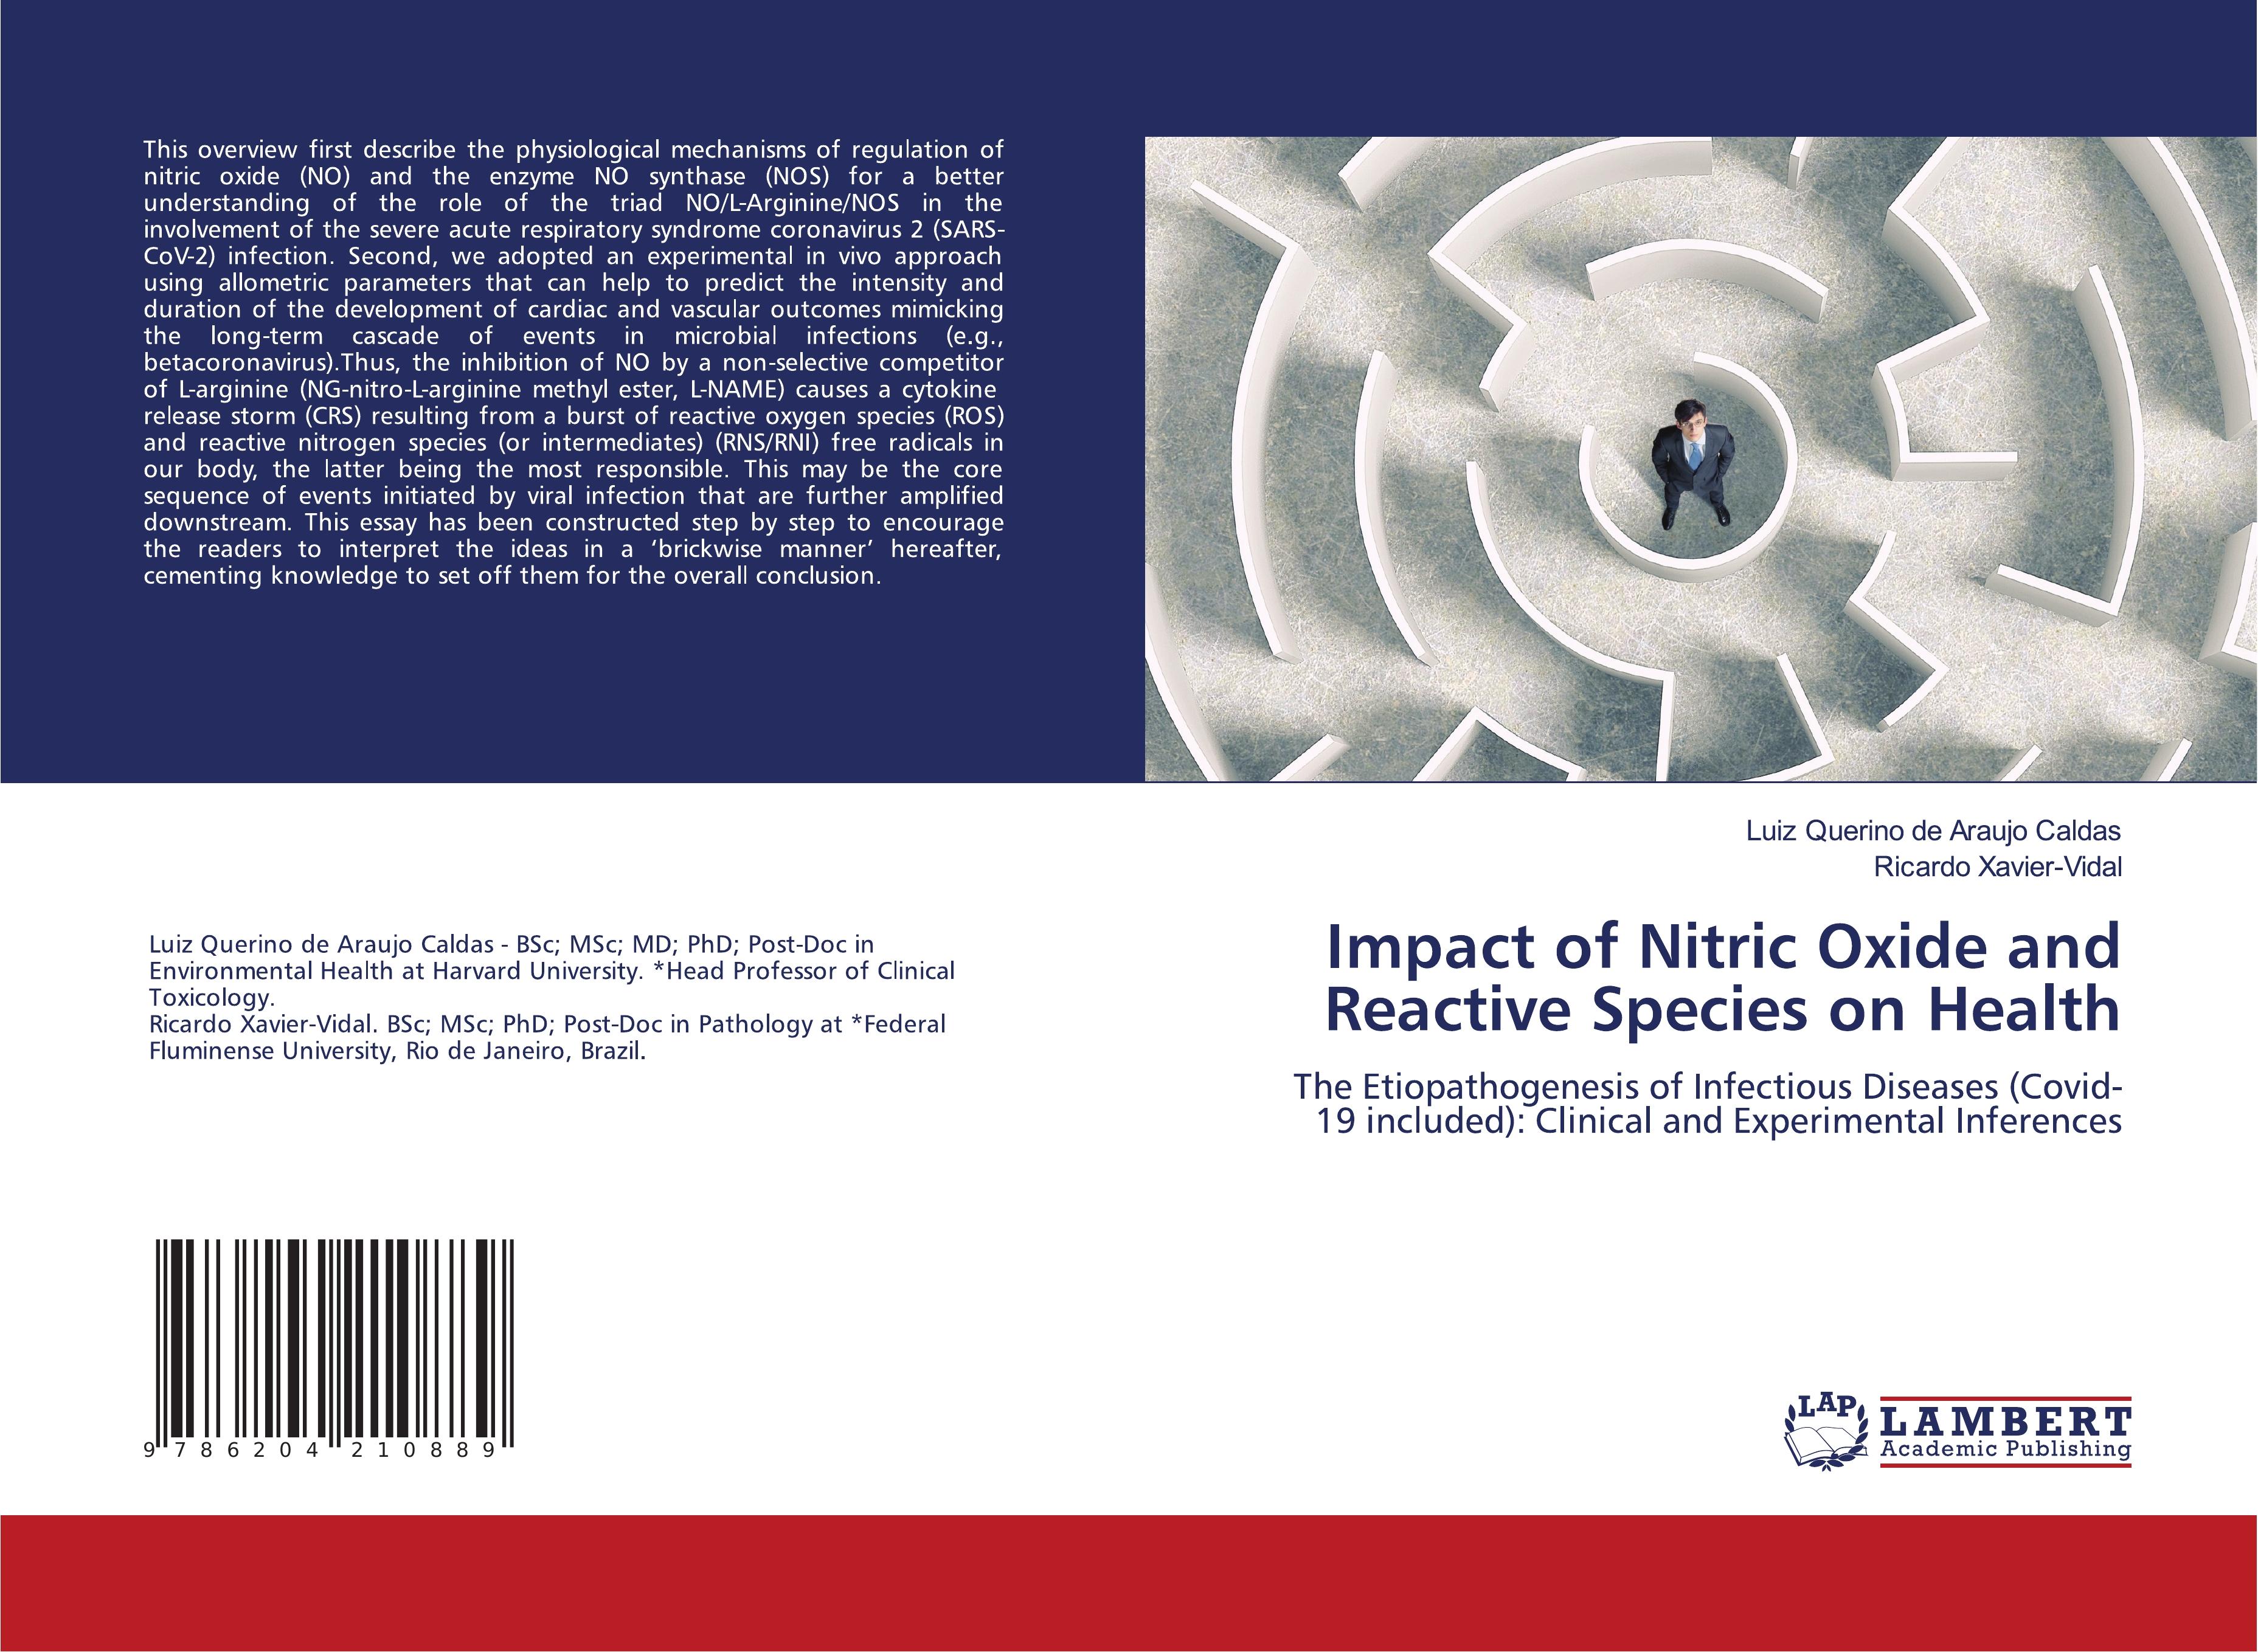 Impact of Nitric Oxide and Reactive Species on Health - Luiz Querino de Araujo Caldas|Ricardo Xavier-Vidal